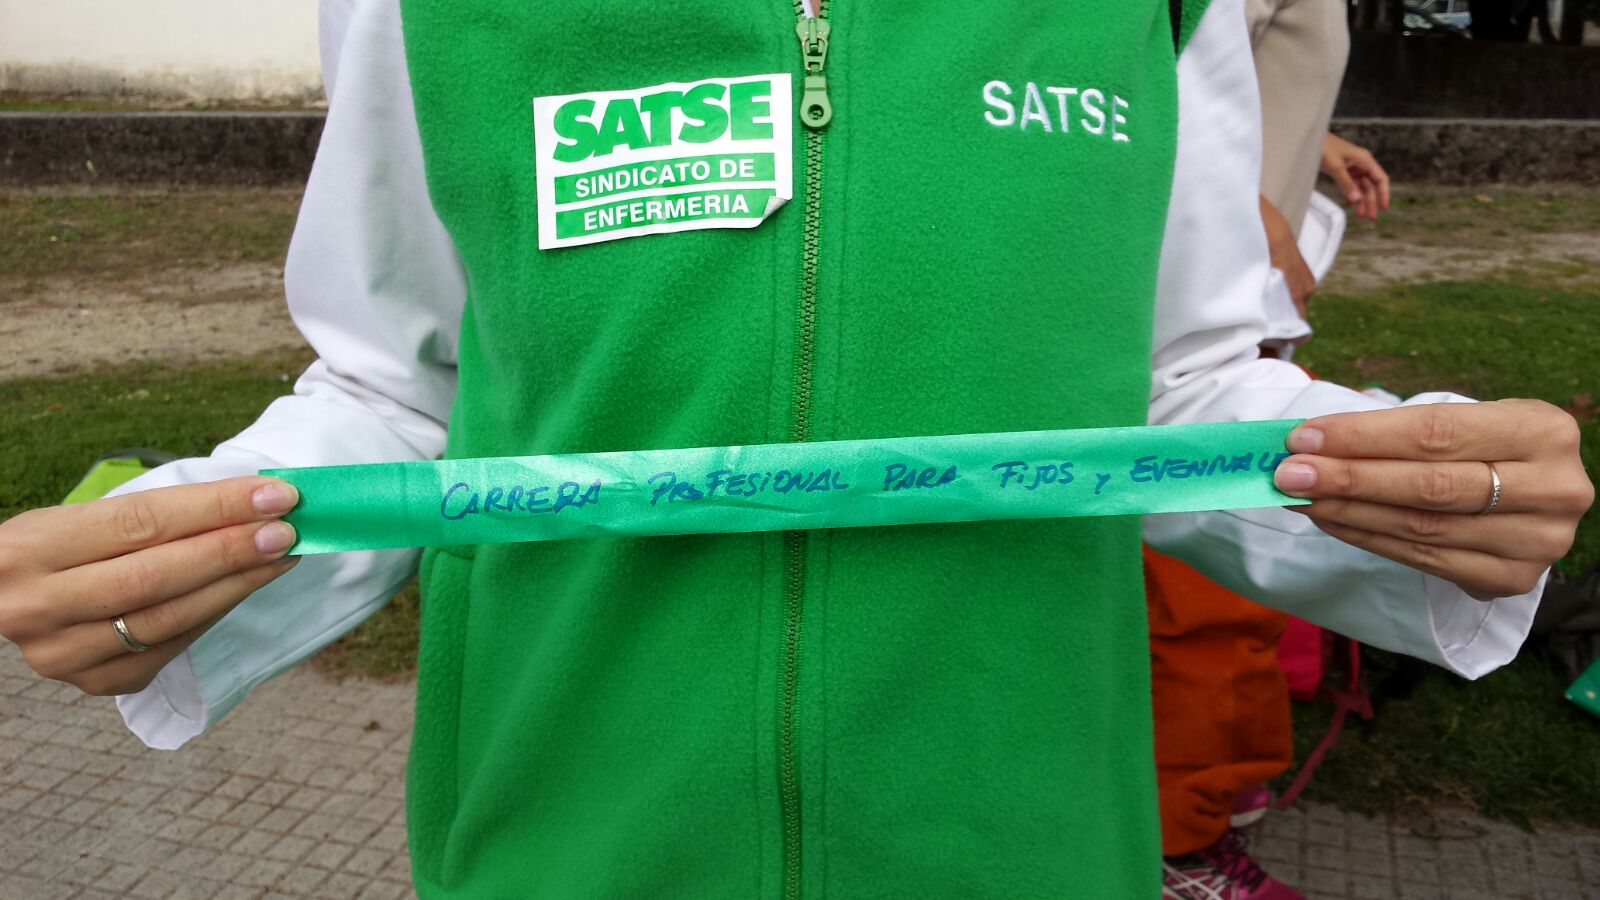 SATSE reclamó durante dos años el desbloqueo de la Carrera Profesional del Sergas.